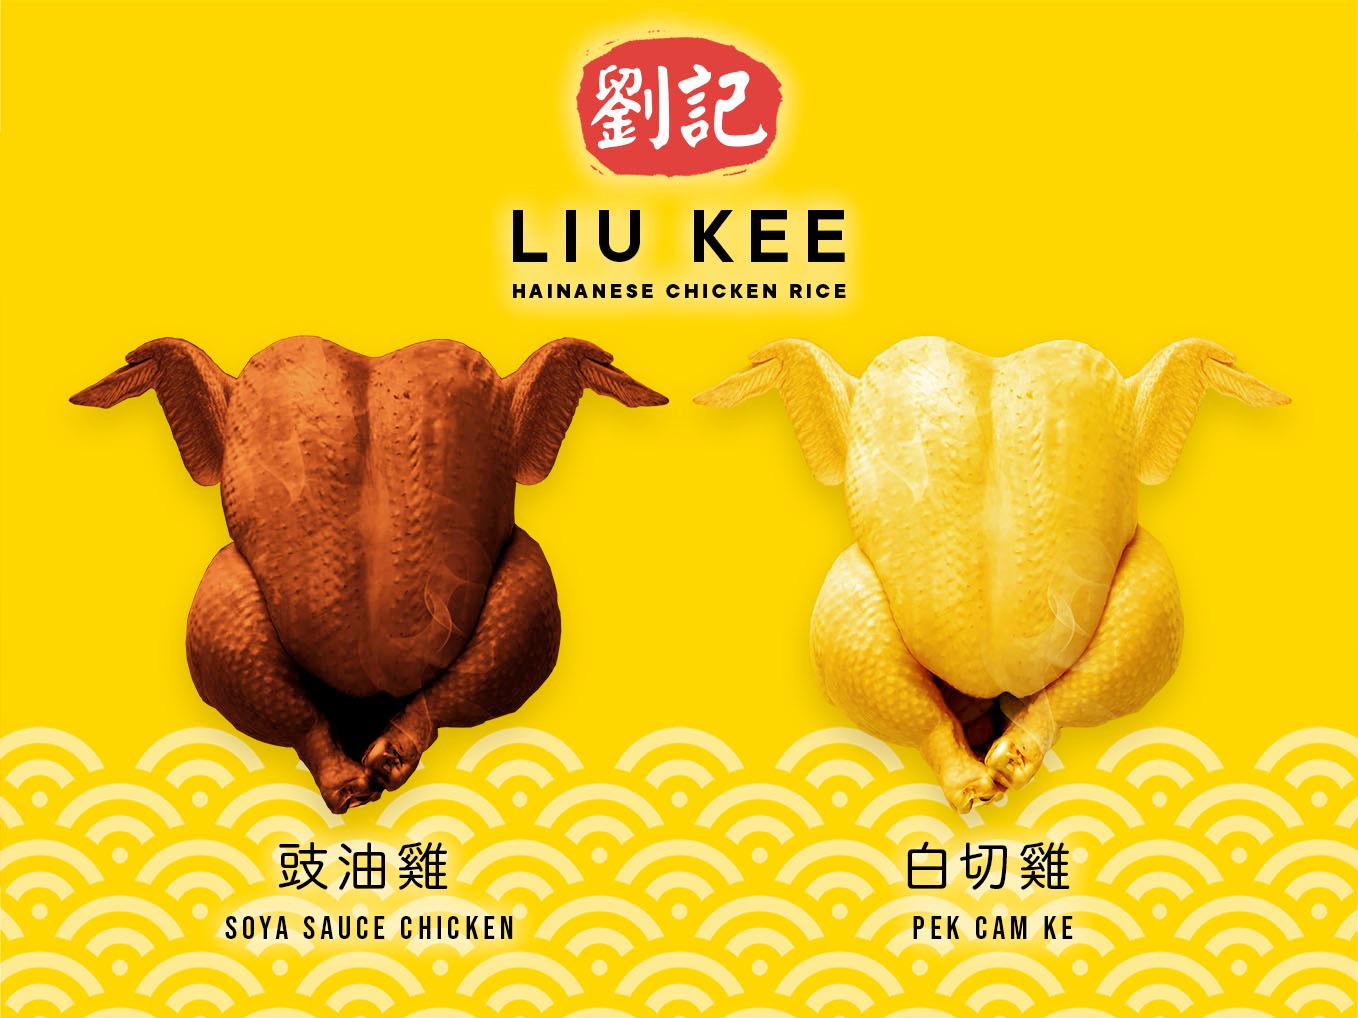 LK - Hainam Chicken Rice - Nasi Ayam, Asia